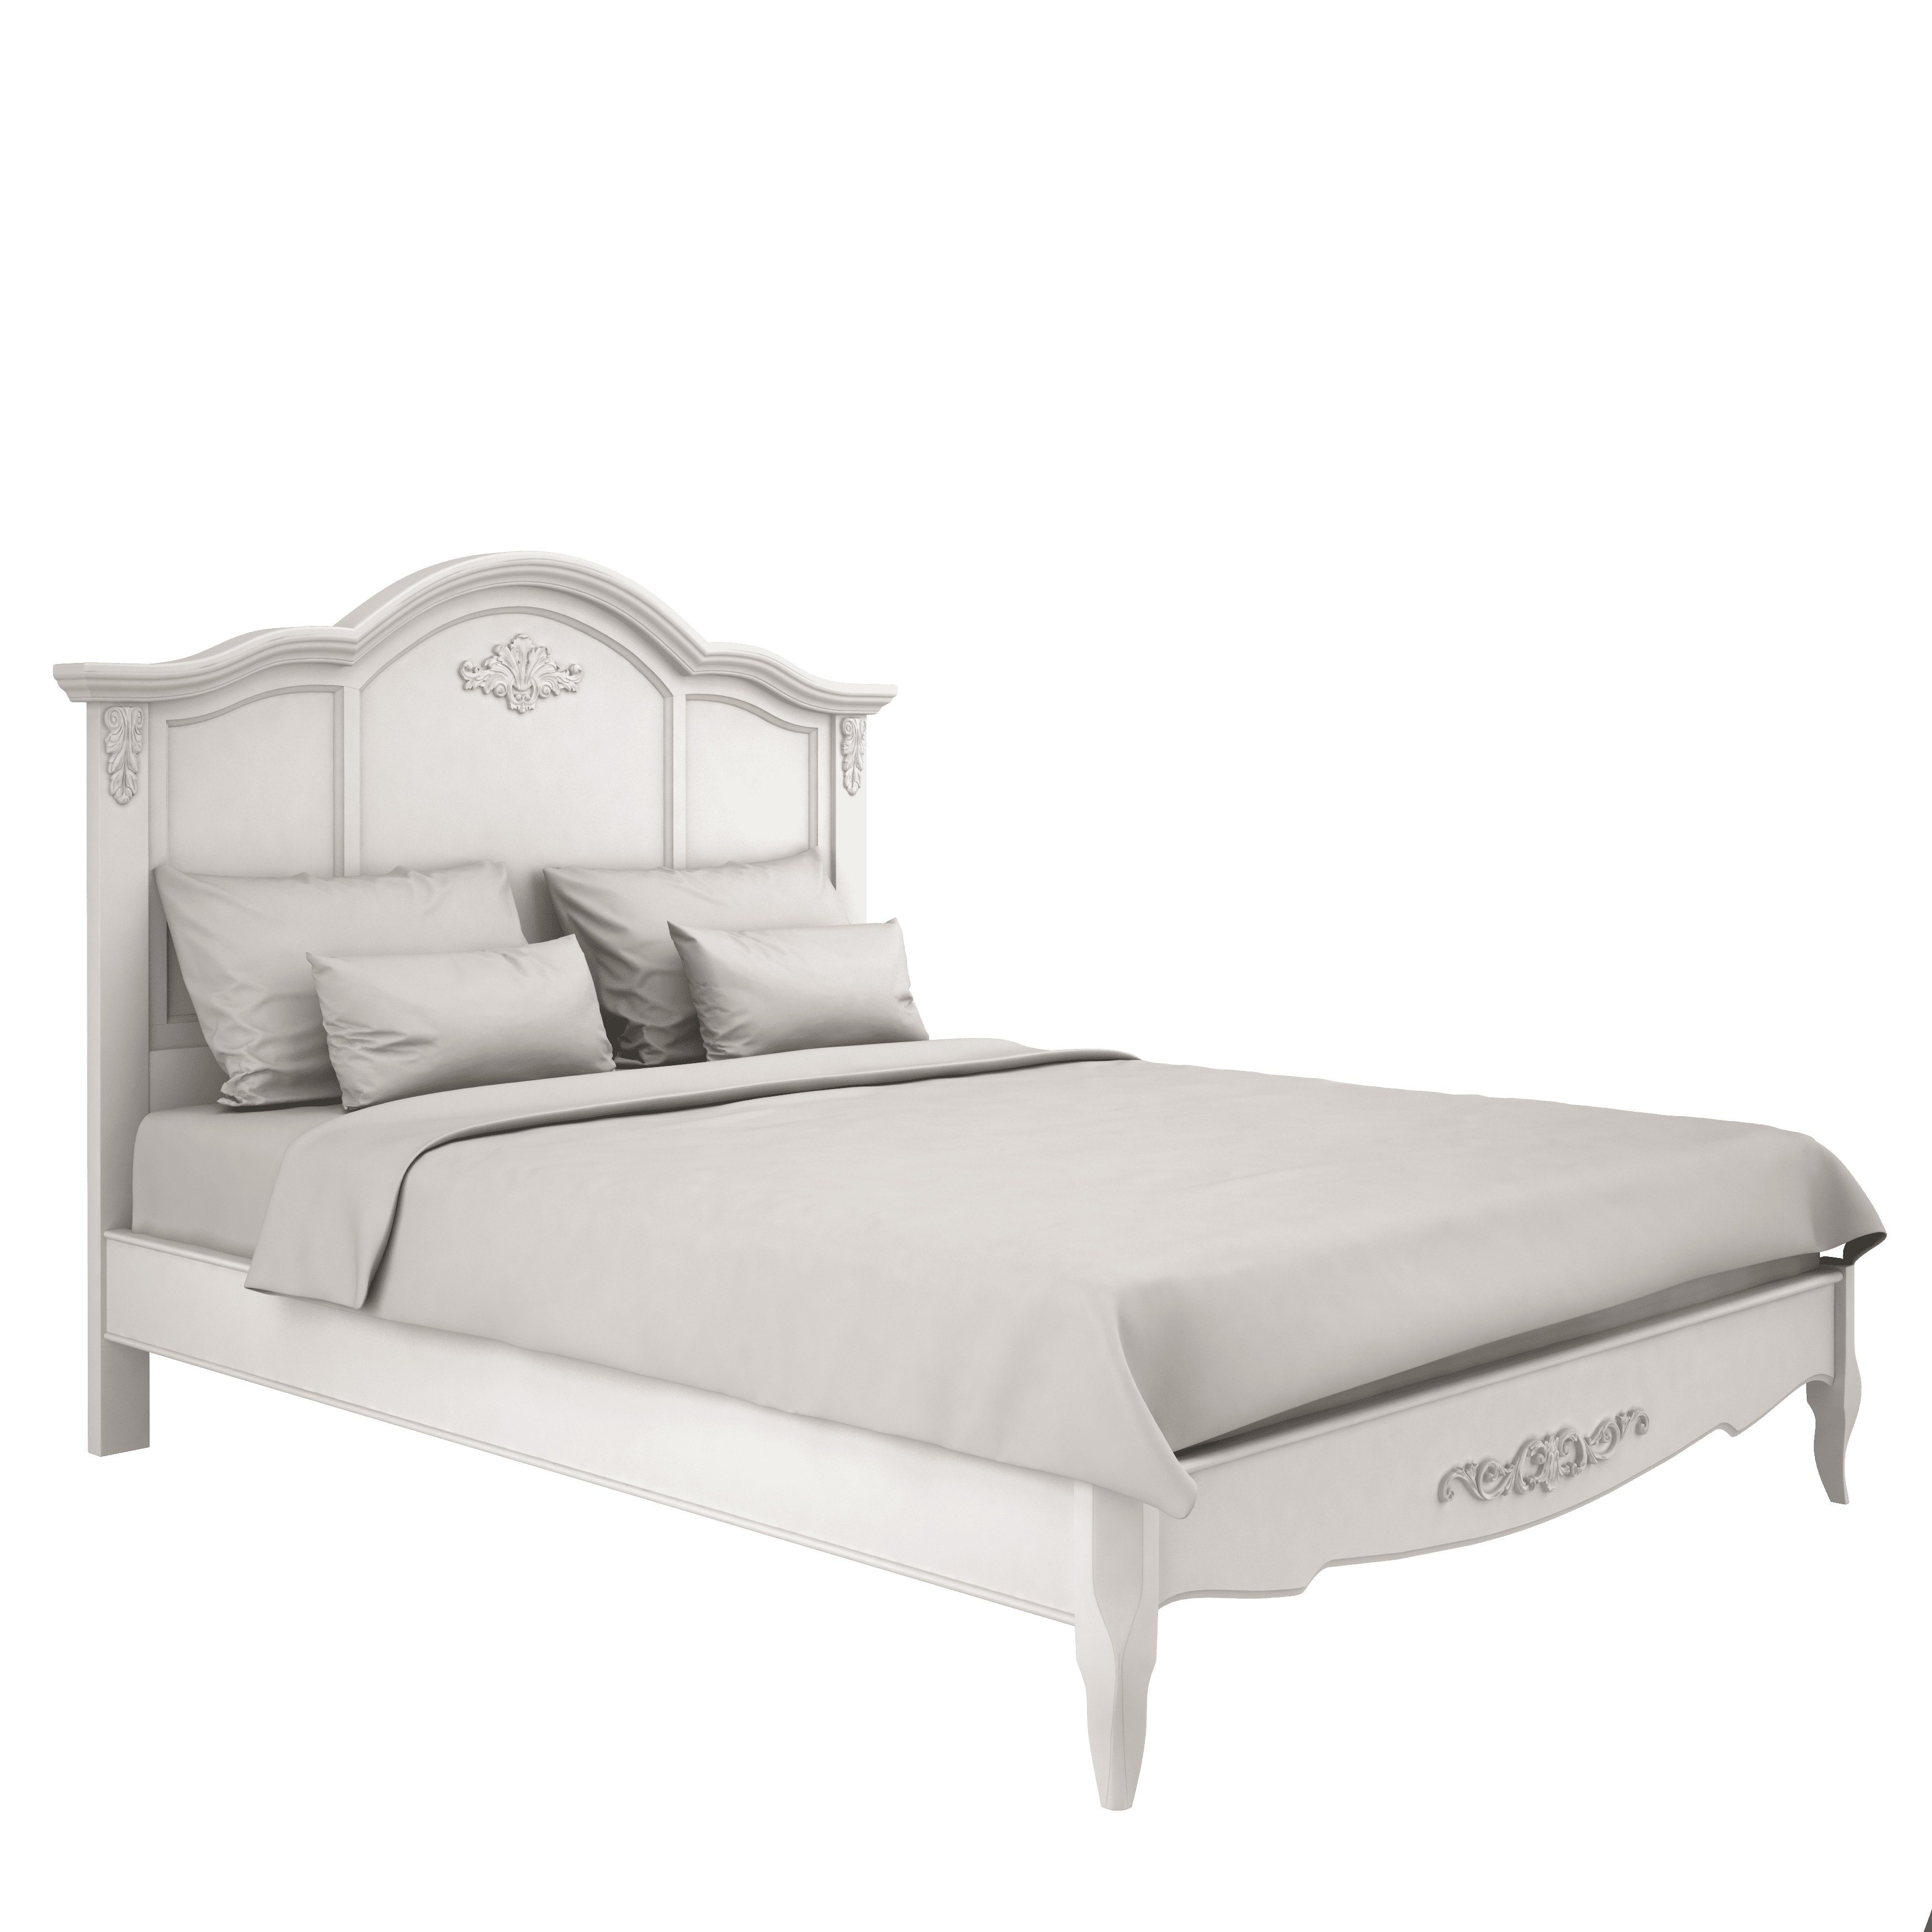 Кровать Aletan Provence, двуспальная, 160x200 см, цвет: слоновая кость (B206)B206